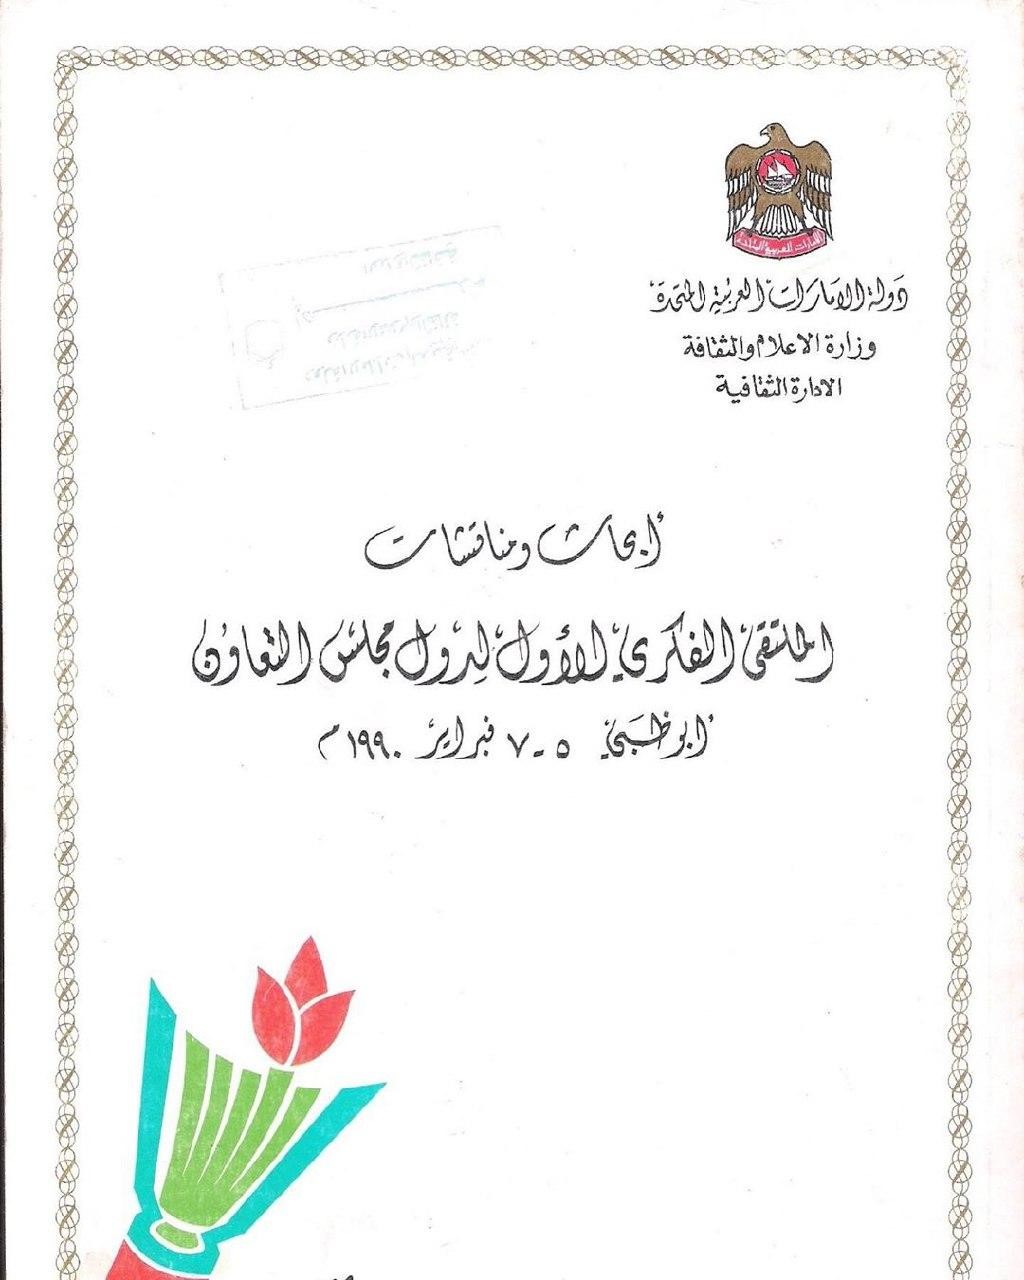 أبحاث الملتقى الفكري الأول لدول مجلس التعاون لدول الخليج العربية، أبو ظبي 5-7 فبراير 1990 م : دور الثقافة في التنمية